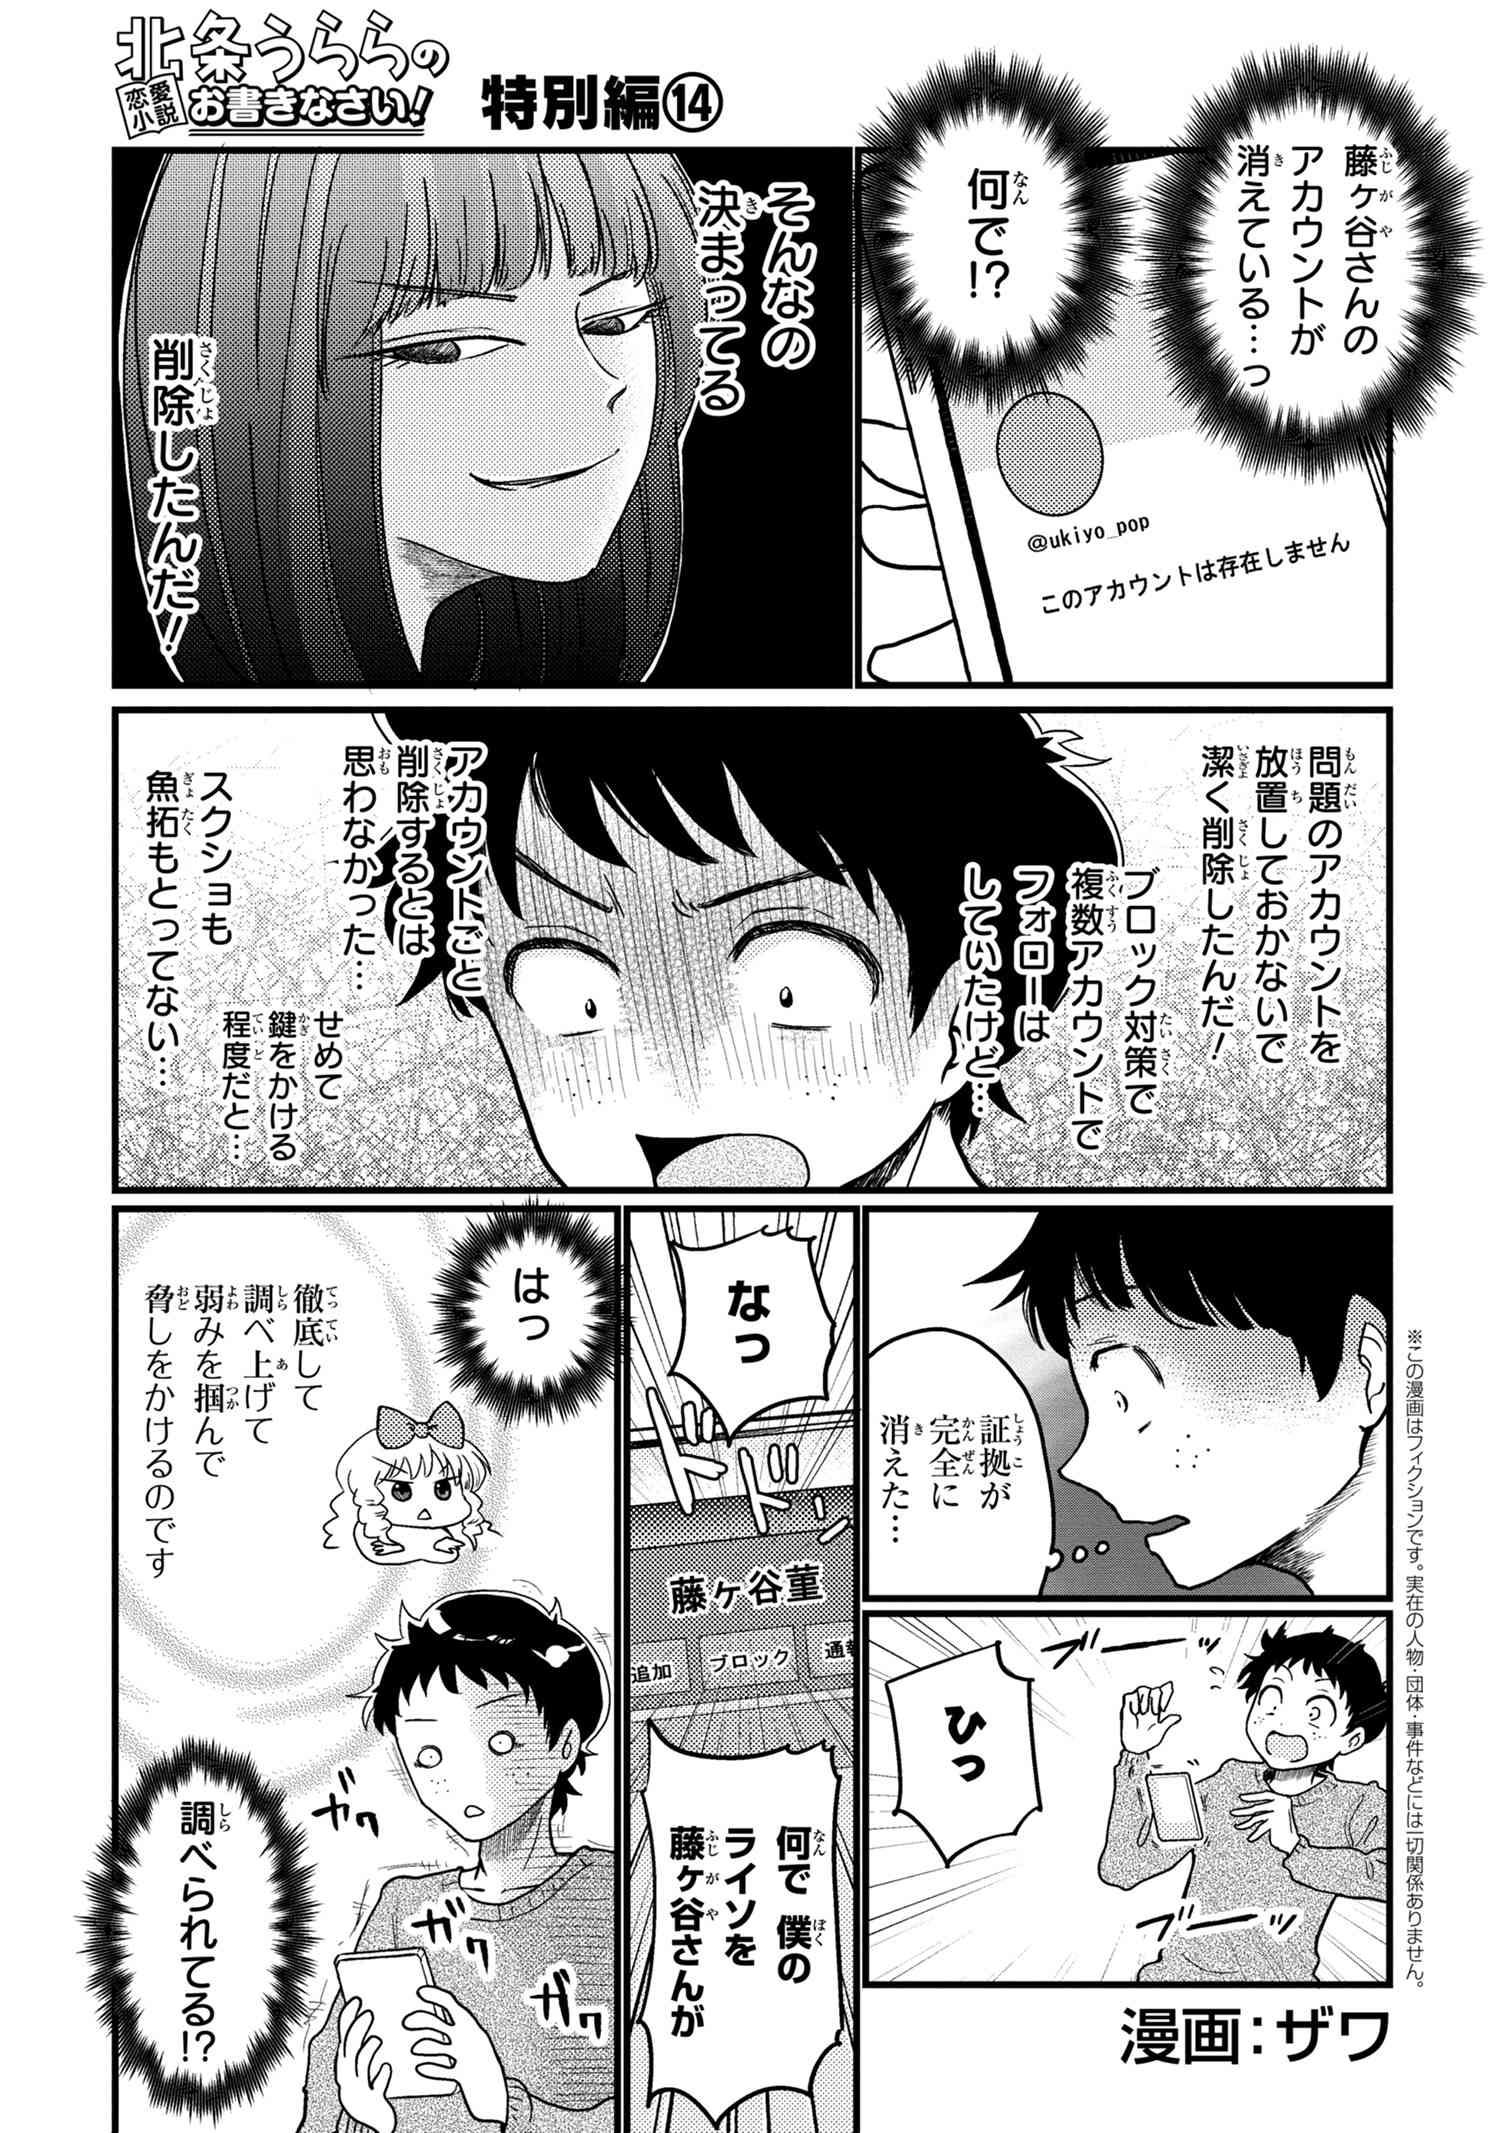 Houjou Urara no renai shousetsu o kaki nasai! - Chapter 14 - Page 1